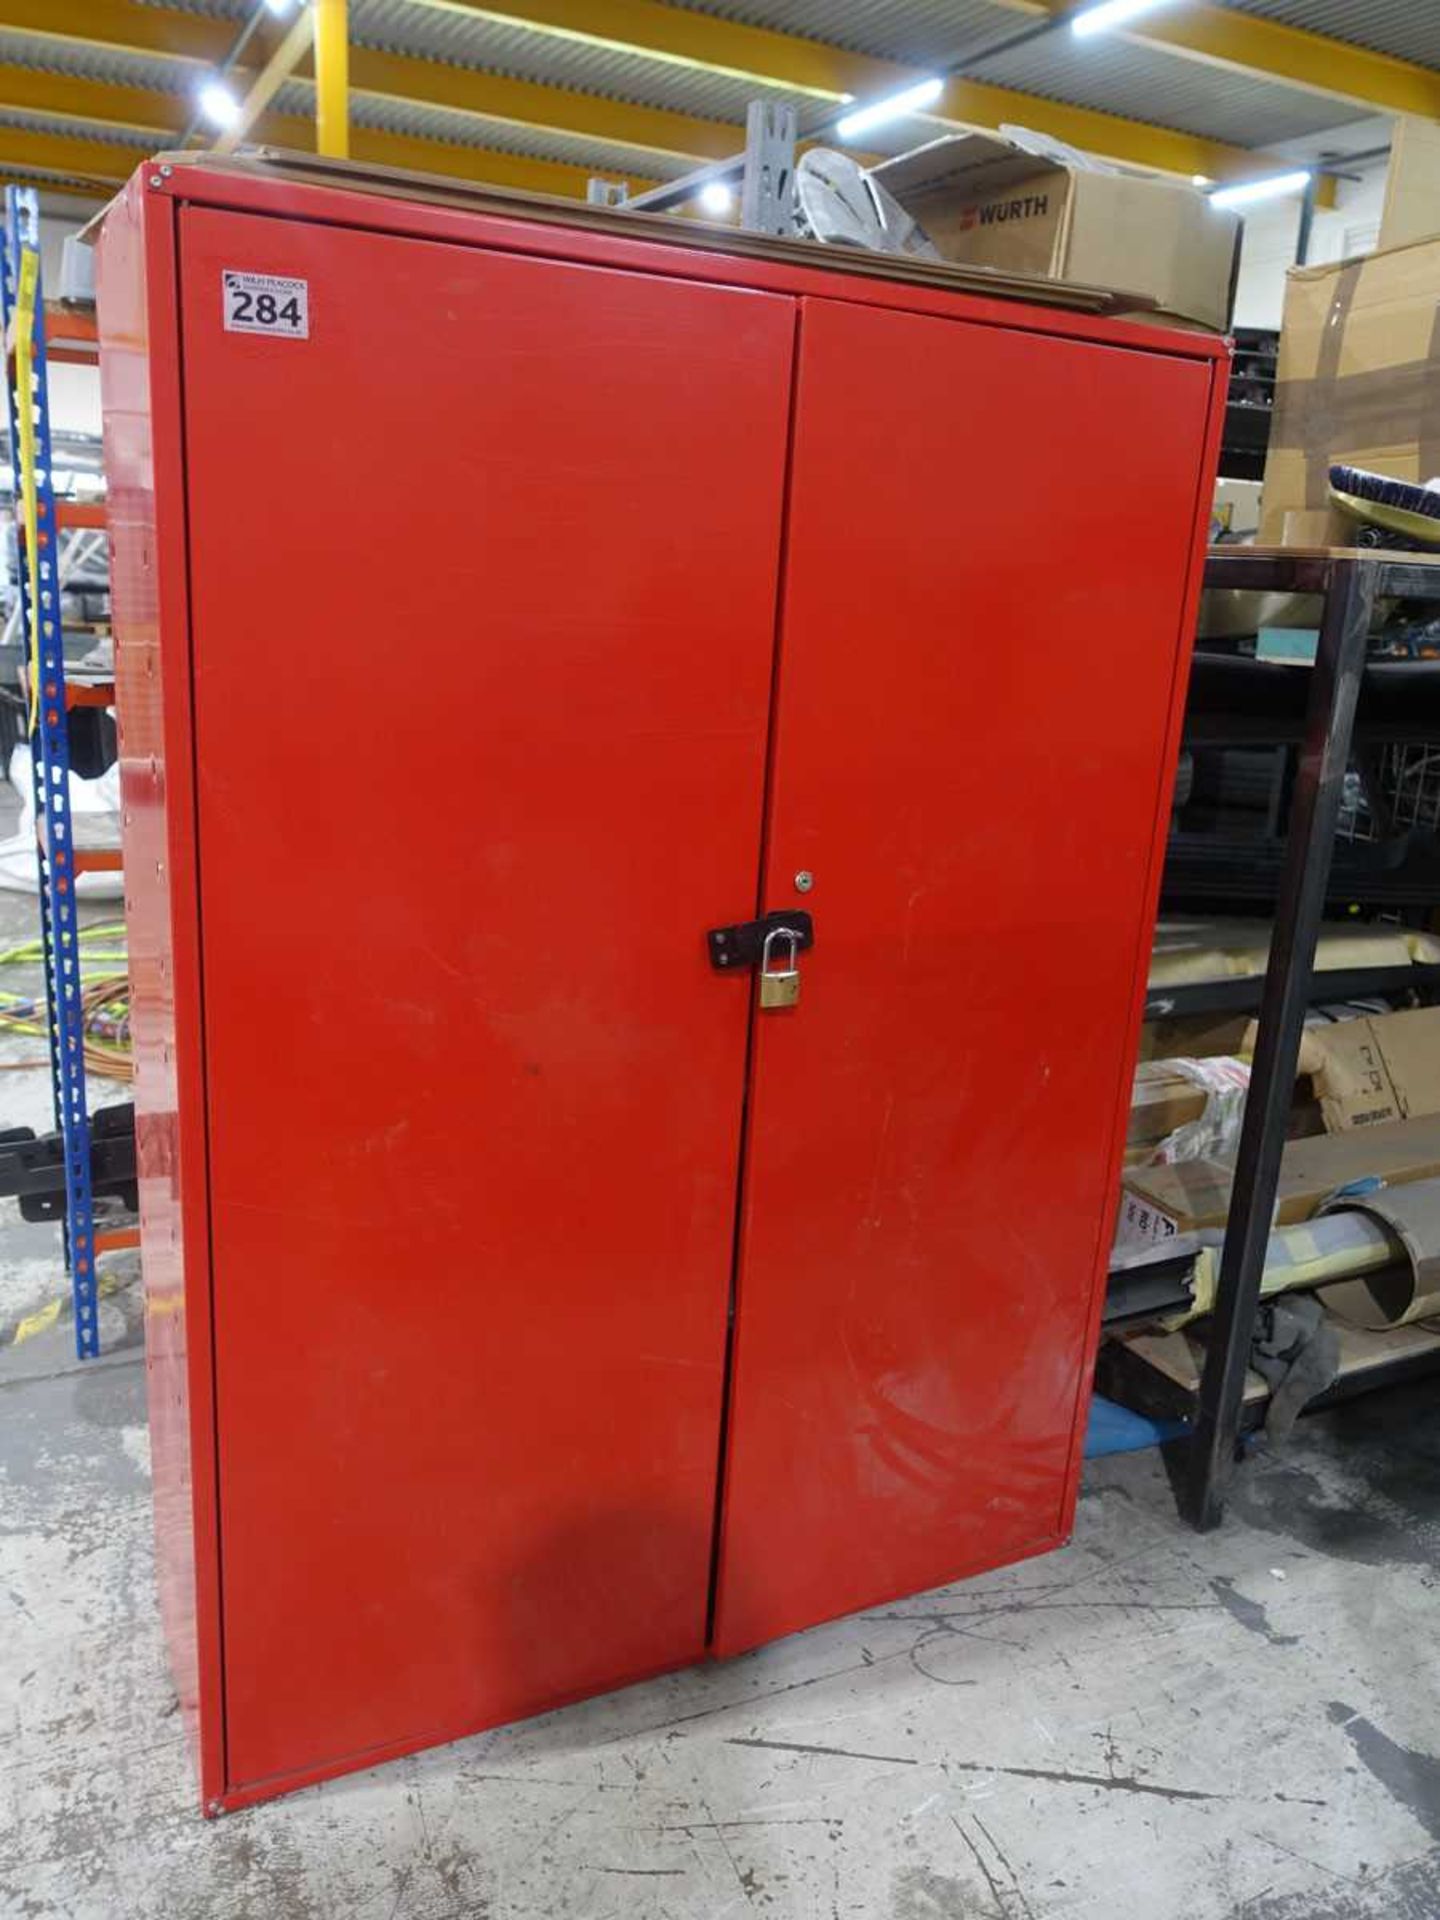 +VAT Red steel double door cupboard, containing miscellaneous contents